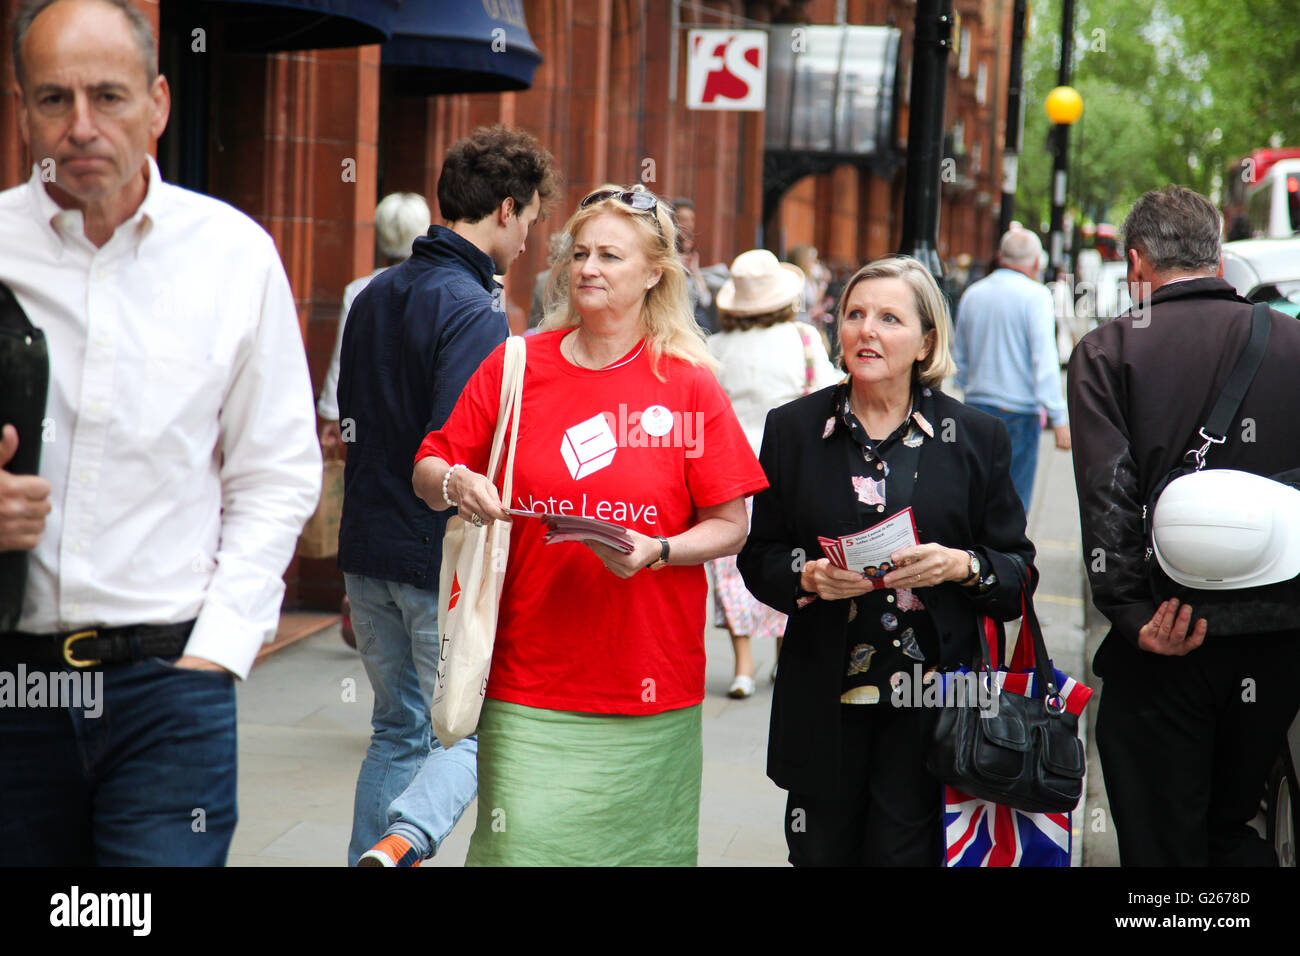 Sloane Square, London, Regno Unito 24 maggio 2016 - Votare per lasciare gli attivisti fuori RHS Chelsea Flower Show Credito: Dinendra Haria/Alamy Live News Foto Stock